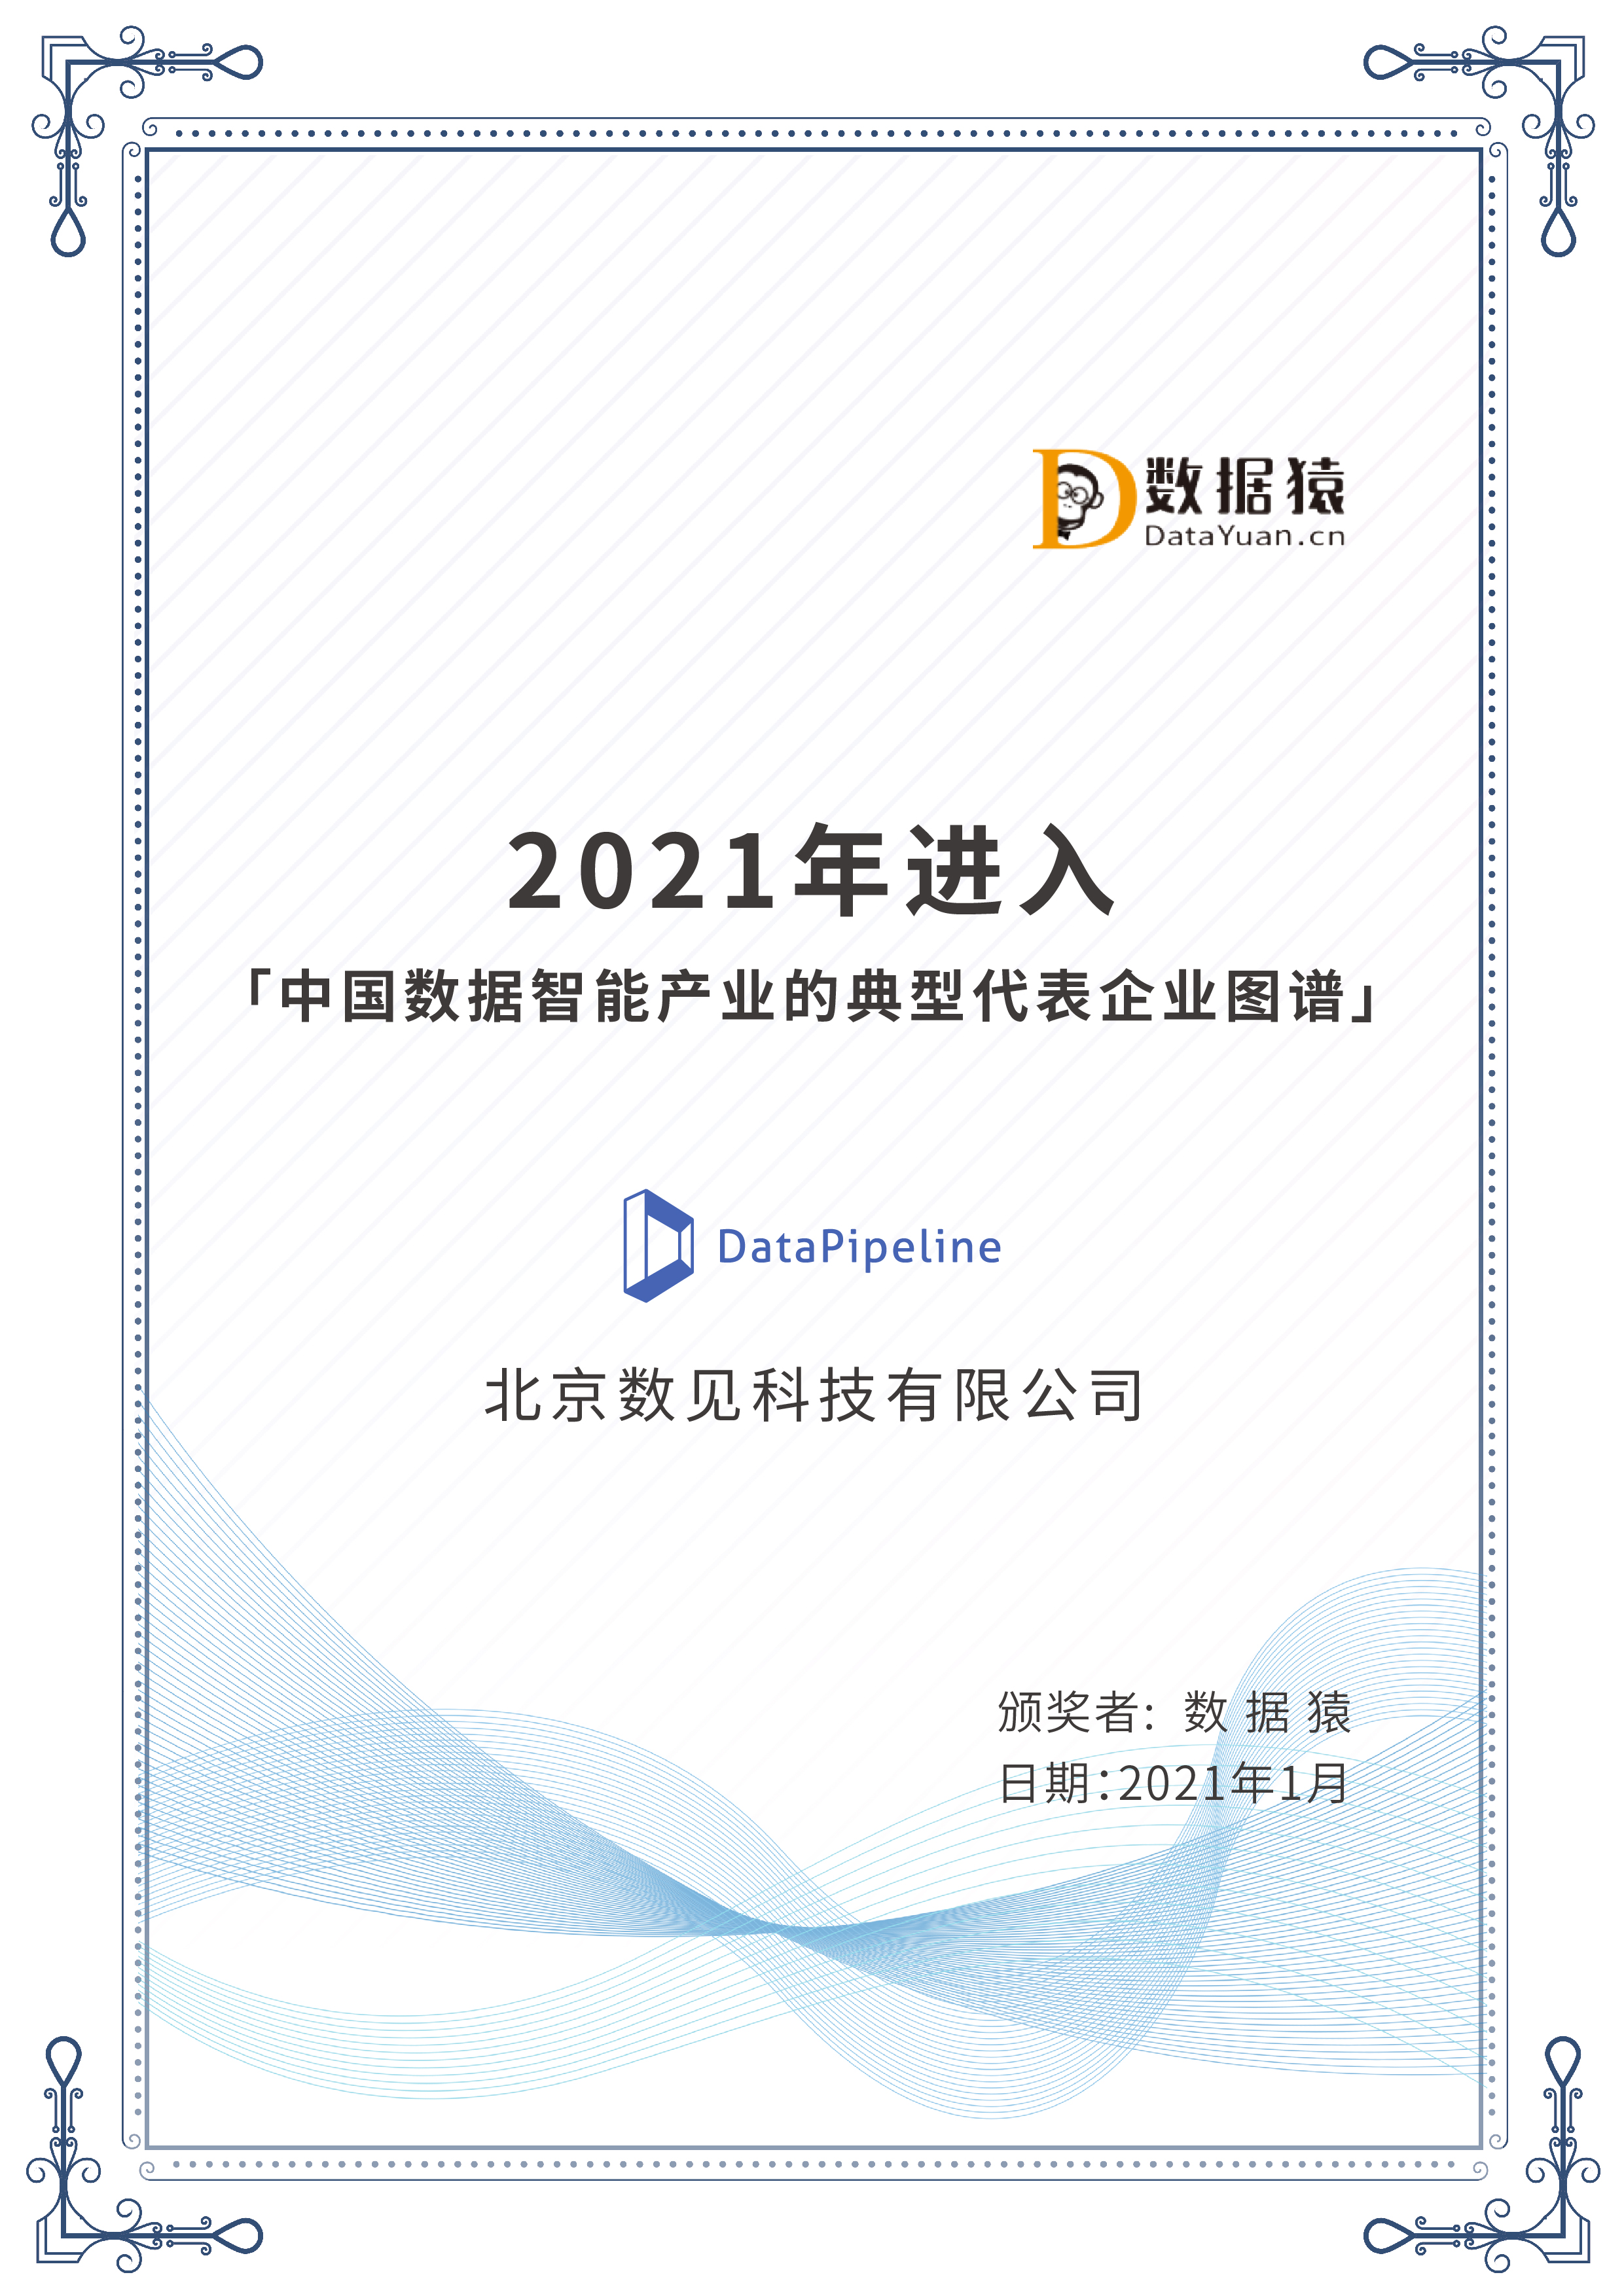 2021年进入「中国数据智能产业的典型代表企业图谱」